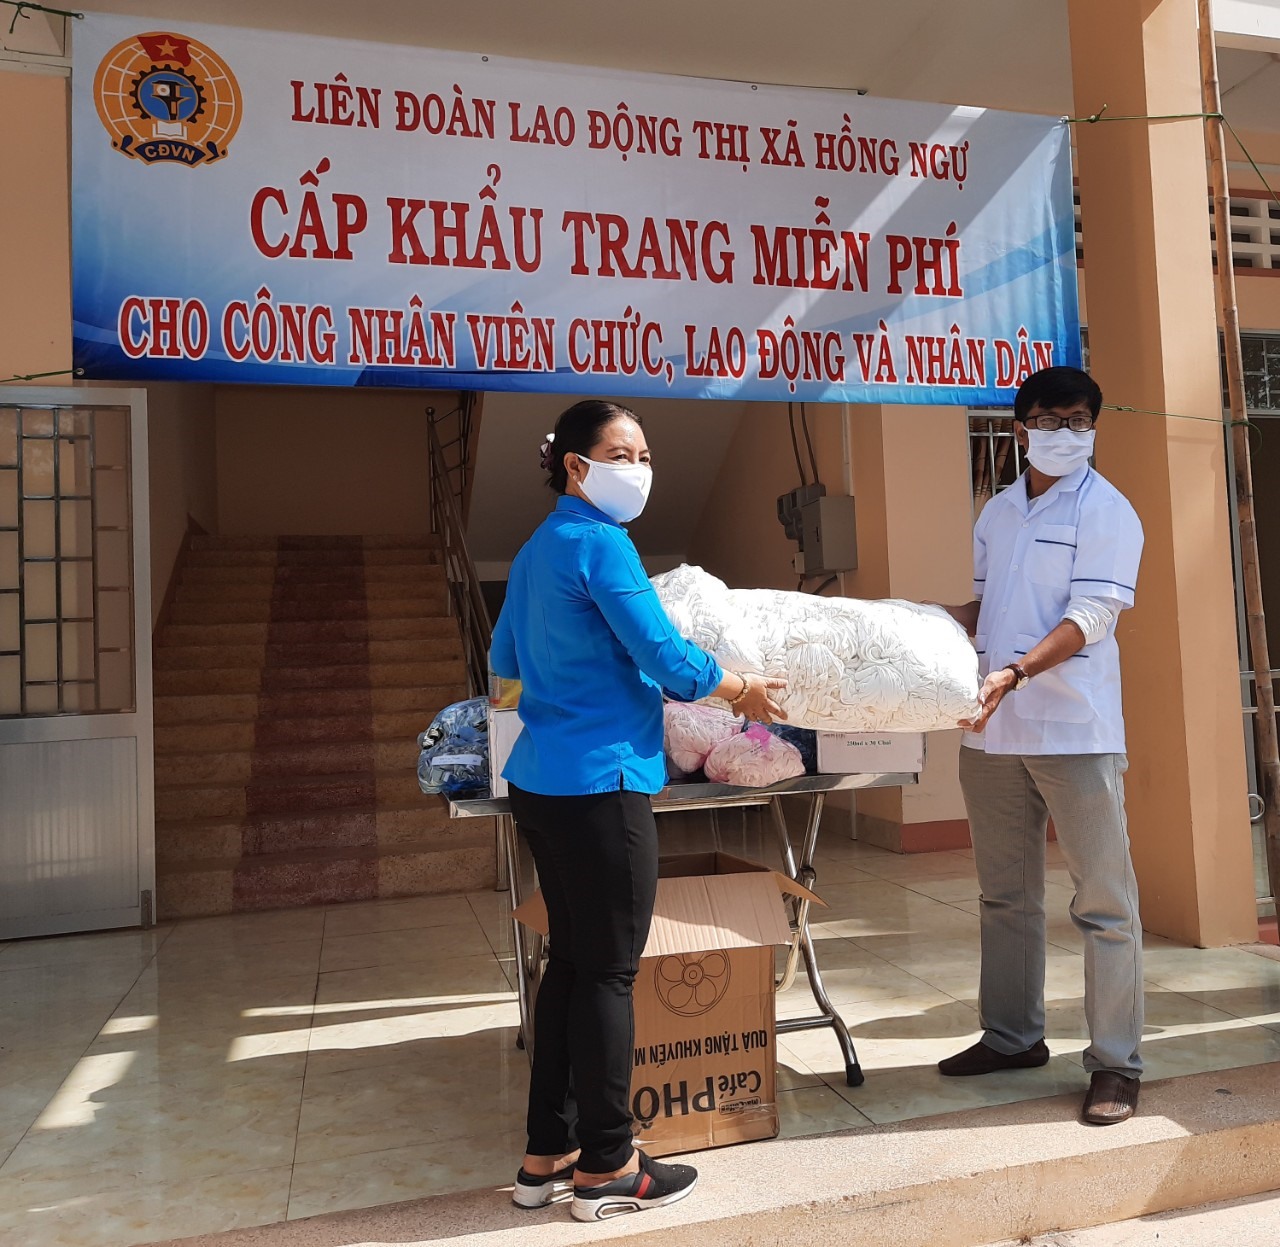 Hơn 2000 chiếc khẩu trang và nước rửa tay được tặng cho lượng y tế đang làm việc trong mùa dịch COVID-19. Ảnh:PT